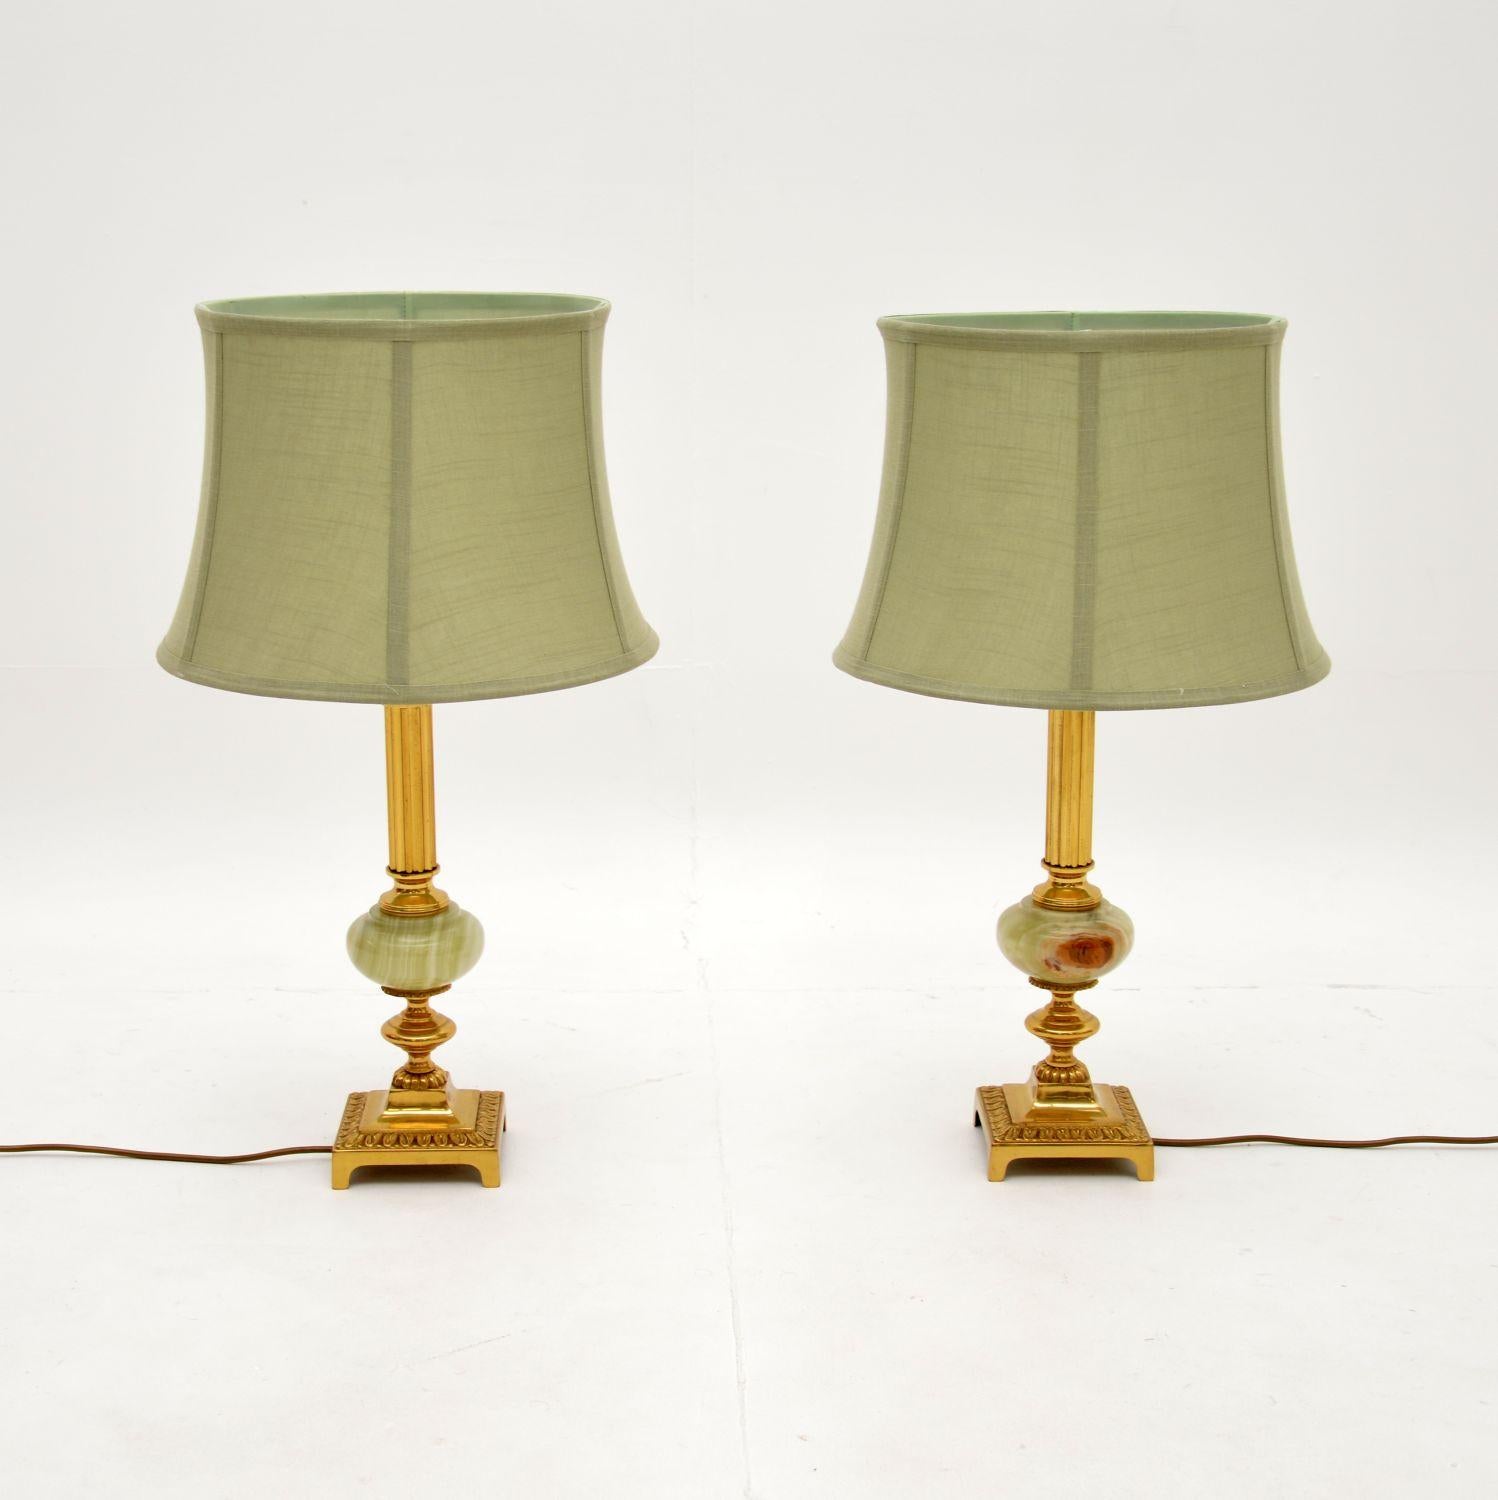 Magnifique paire de lampes de table en laiton et onyx, datant des années 1930.

Ils sont d'une superbe qualité et d'une belle taille. Elles sont dotées de colonnes cannelées en laiton et reposent sur des socles en laiton, reliés par des supports